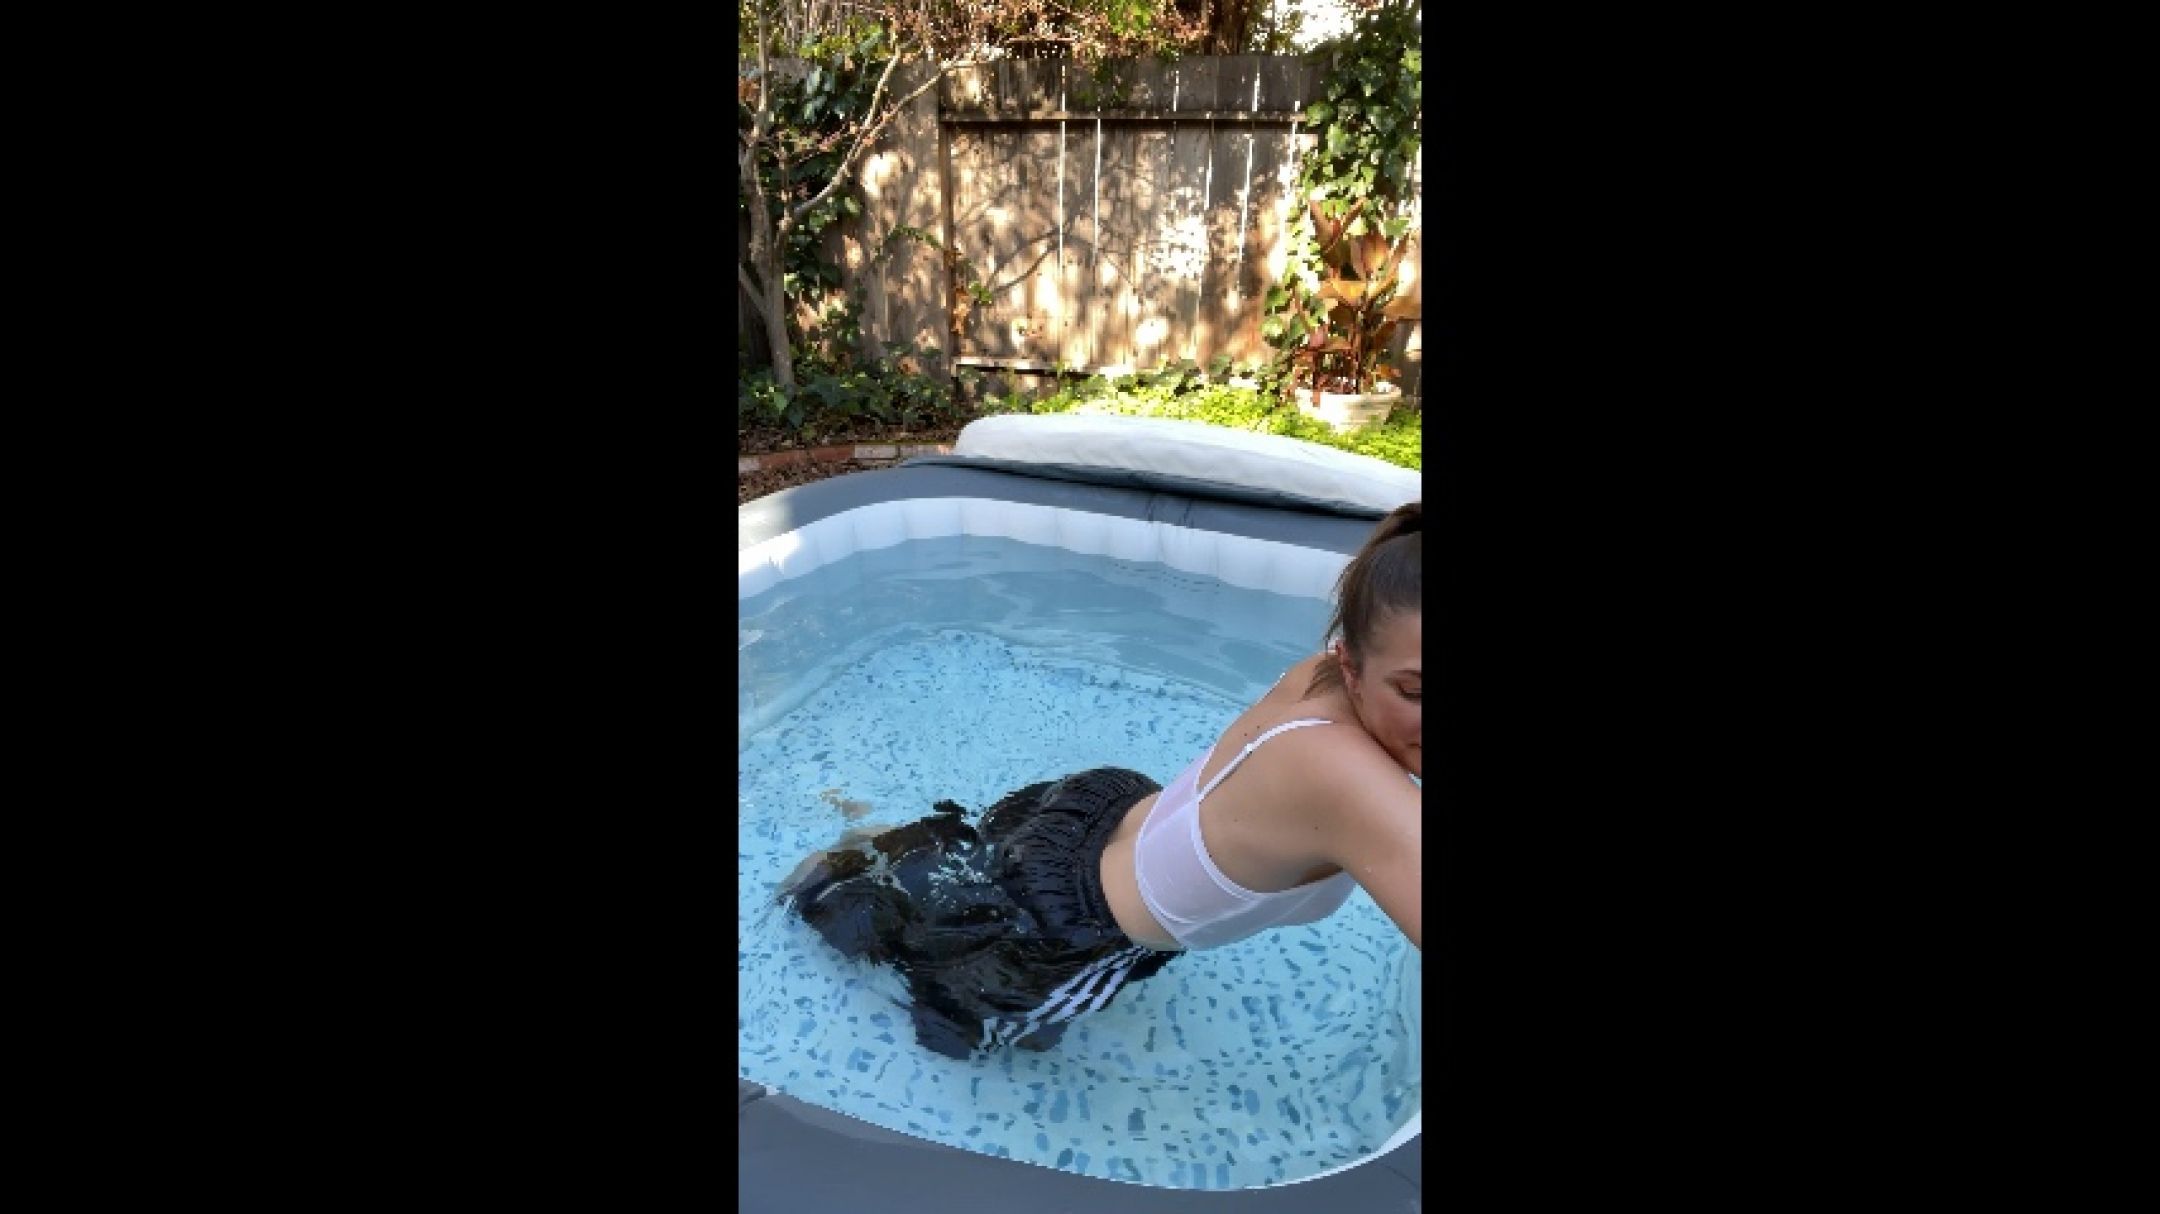 Splish splash in hot tub wearing swishy pants